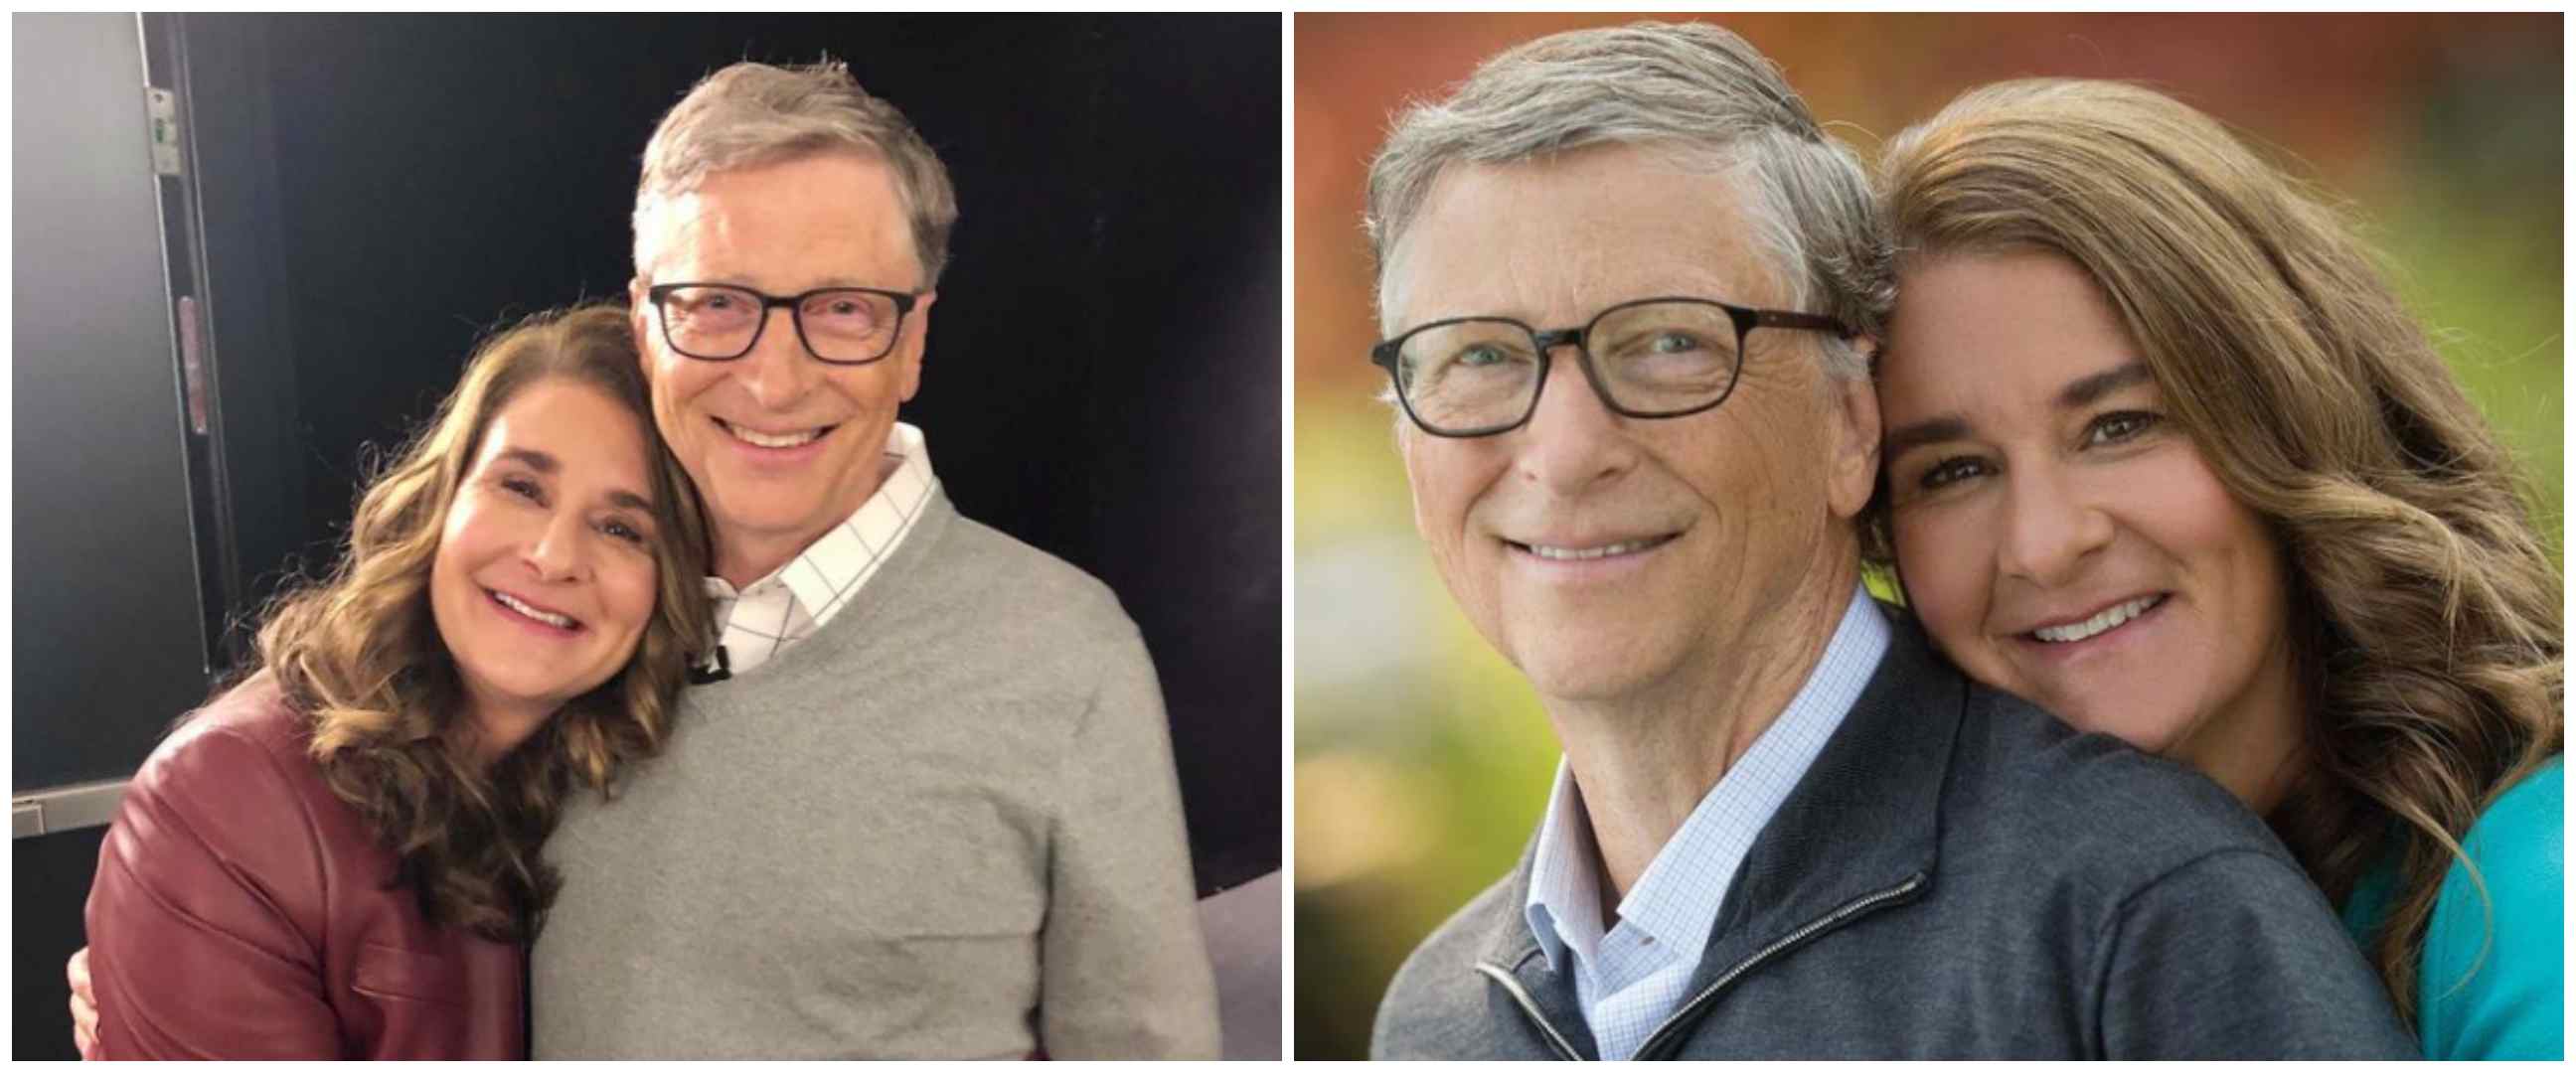  Bill Gates dan Melinda umumkan perceraiannya setelah 27 tahun menikah